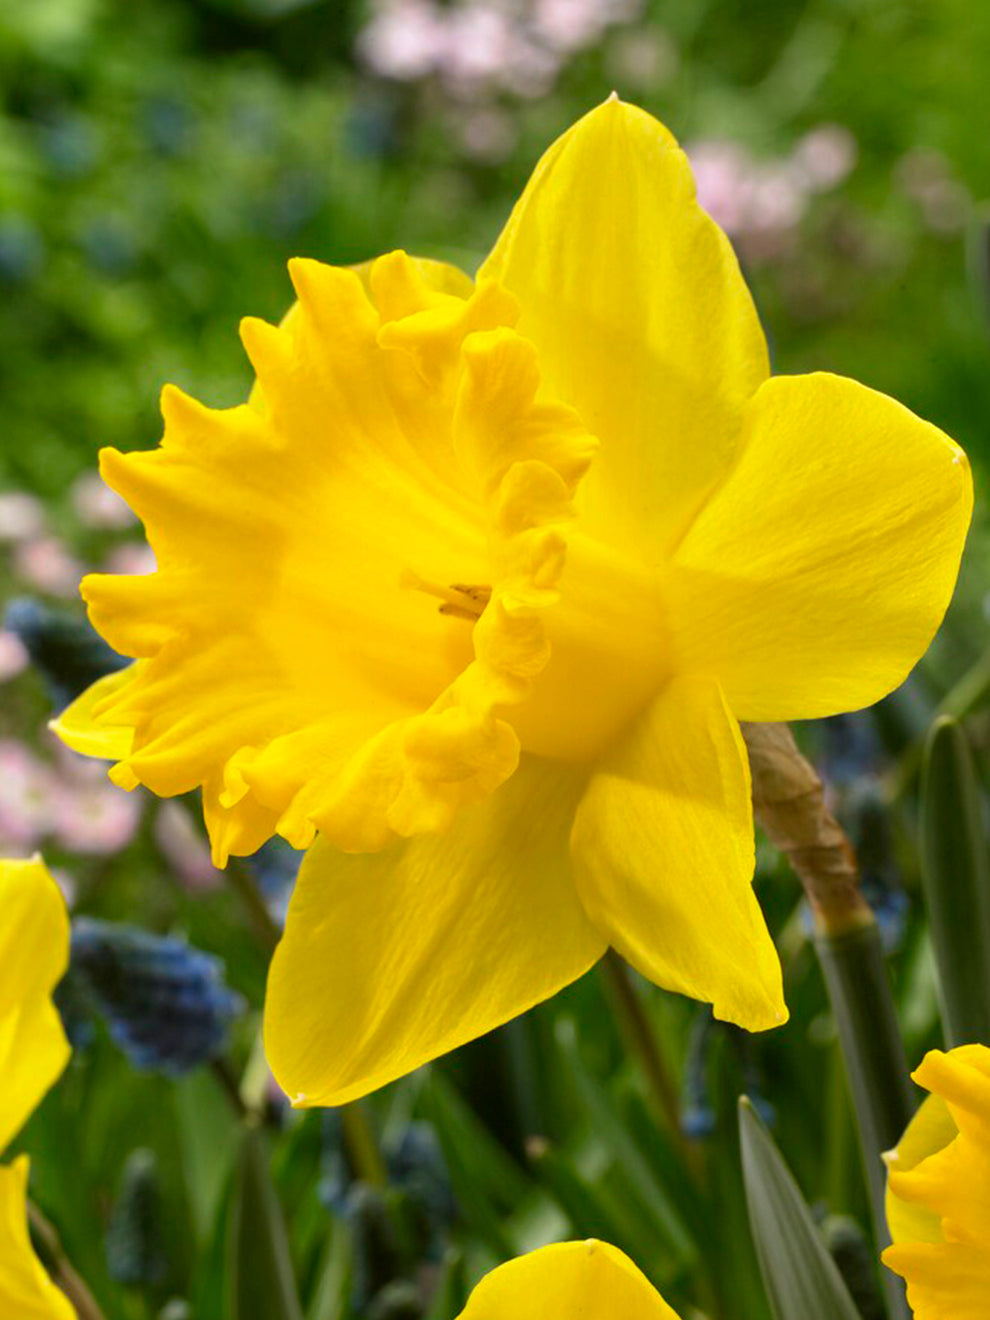 Daffodil bulbs Dutch Master - large yellow daffodil! - Tulip Store